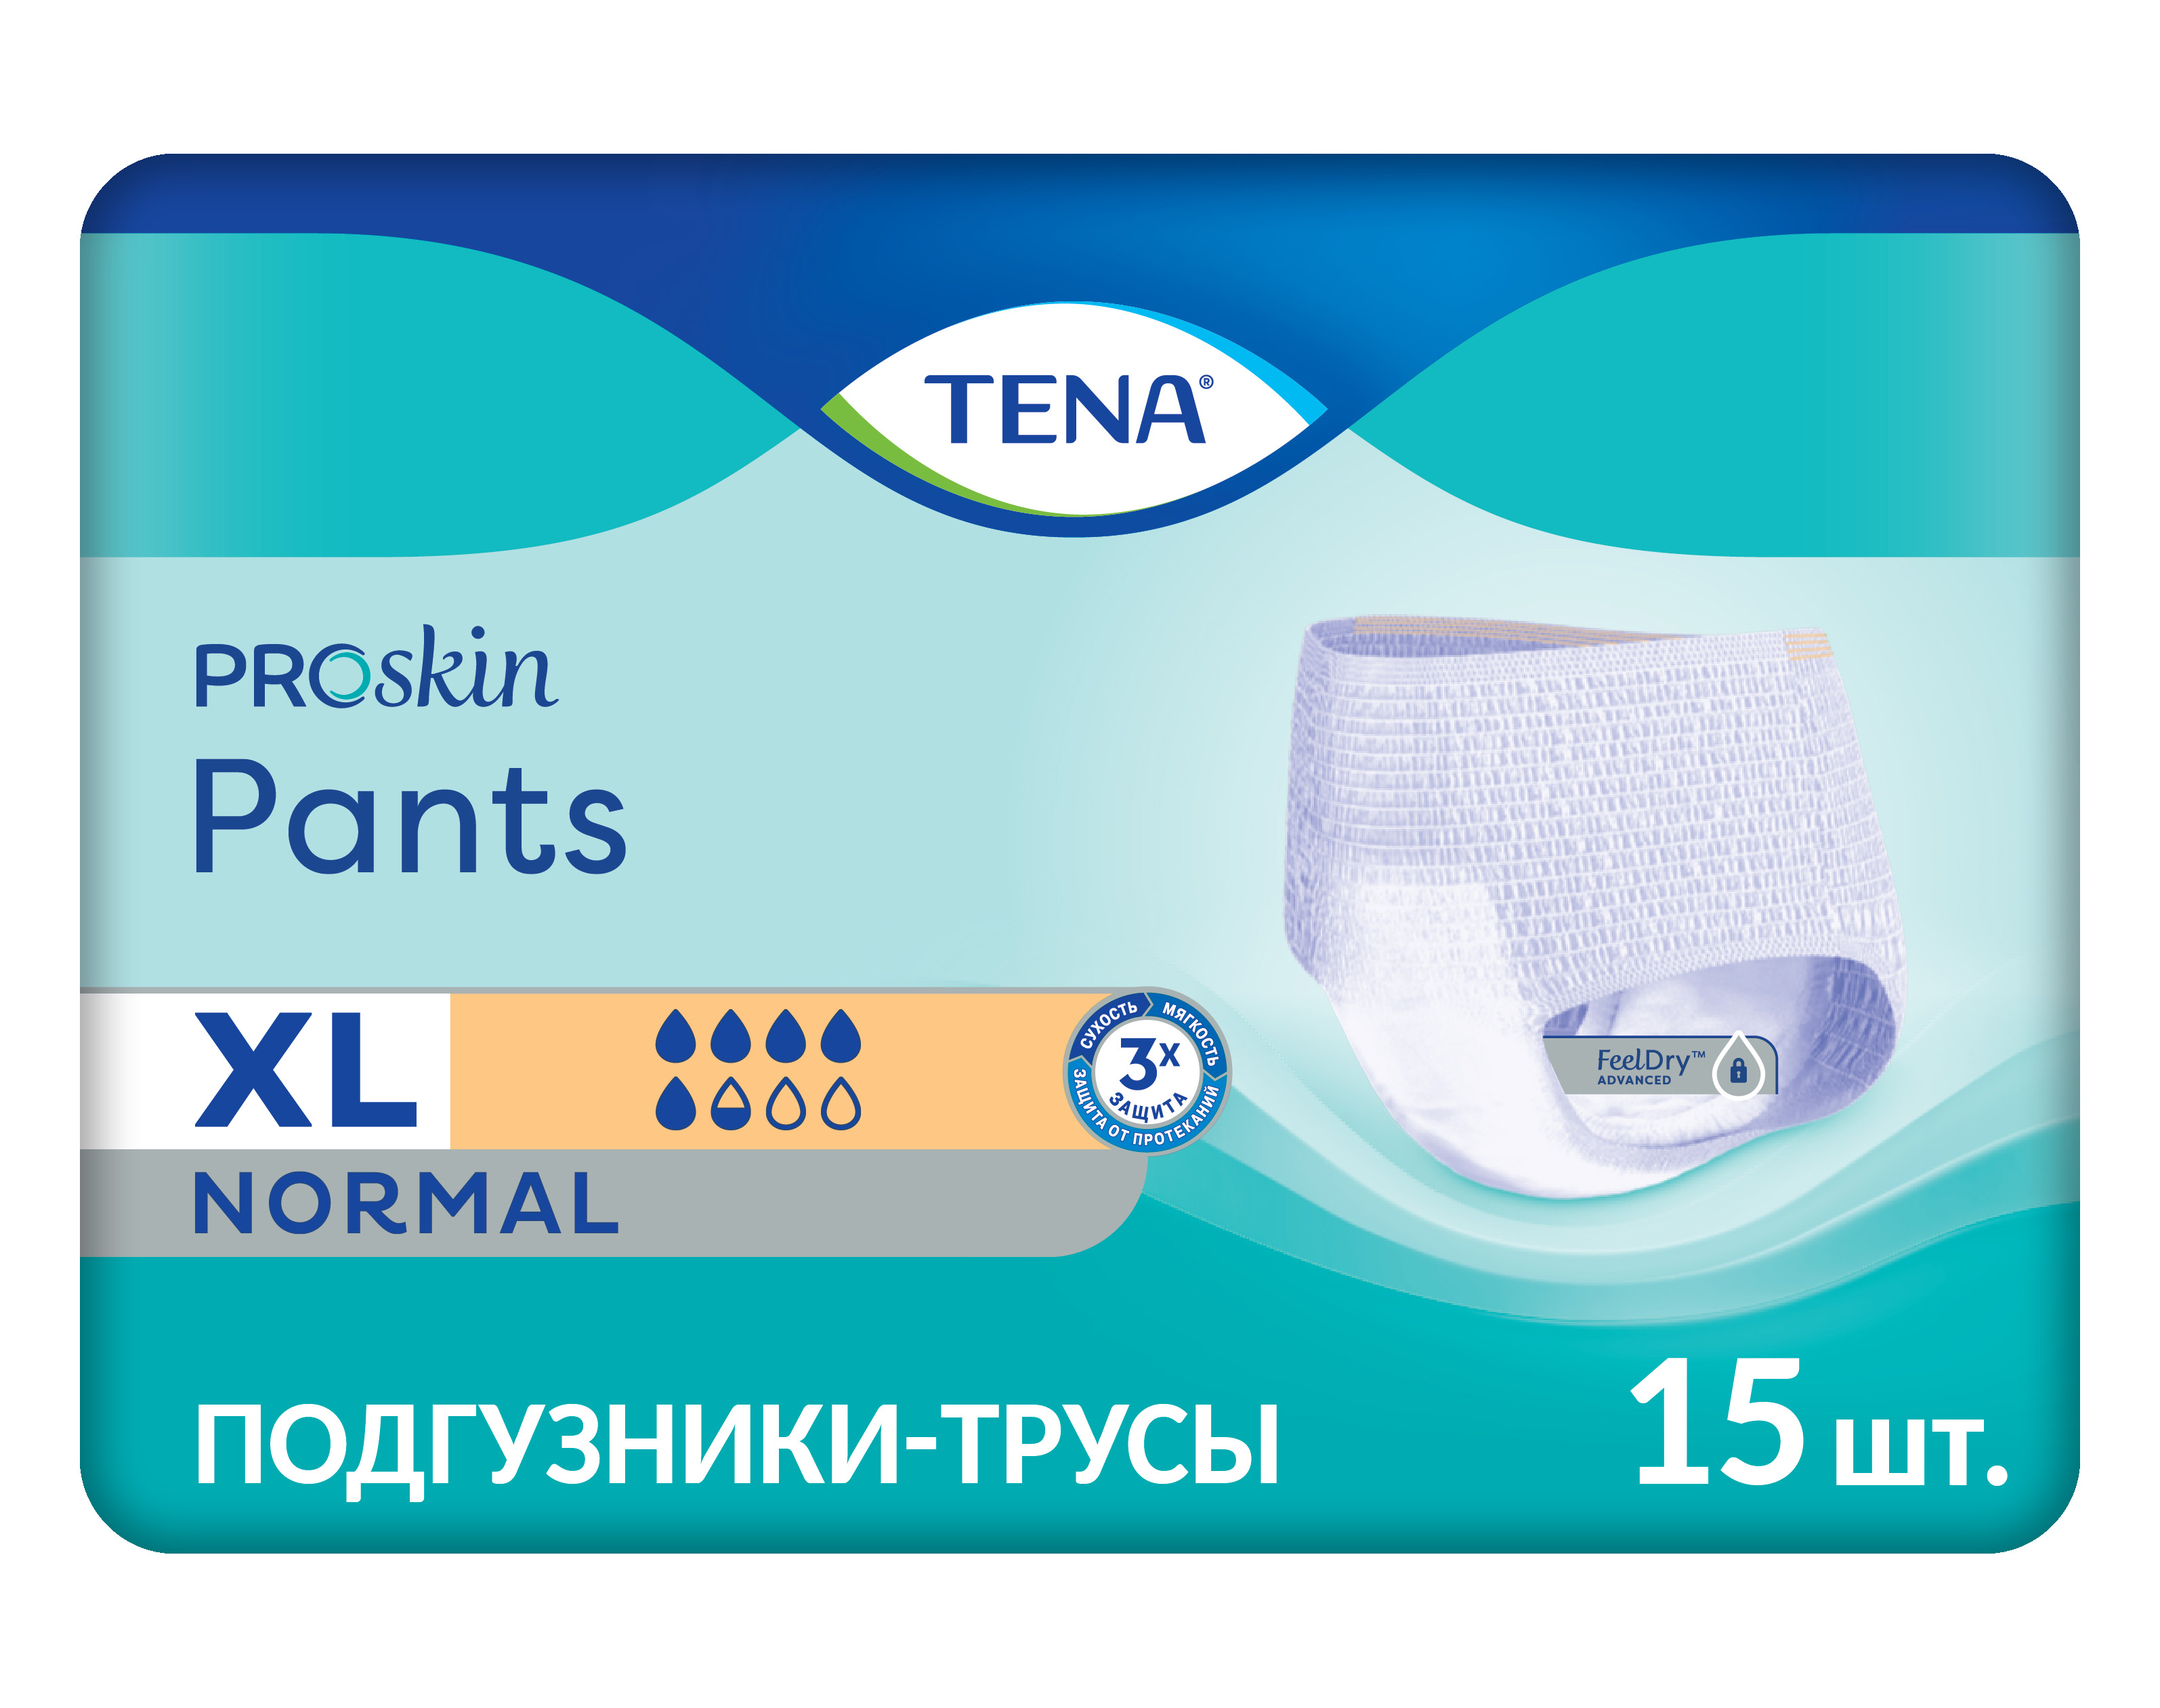 Тена Пантс ПроСкин Нормал, подгузники-трусы для взрослых (XL), 15 шт.